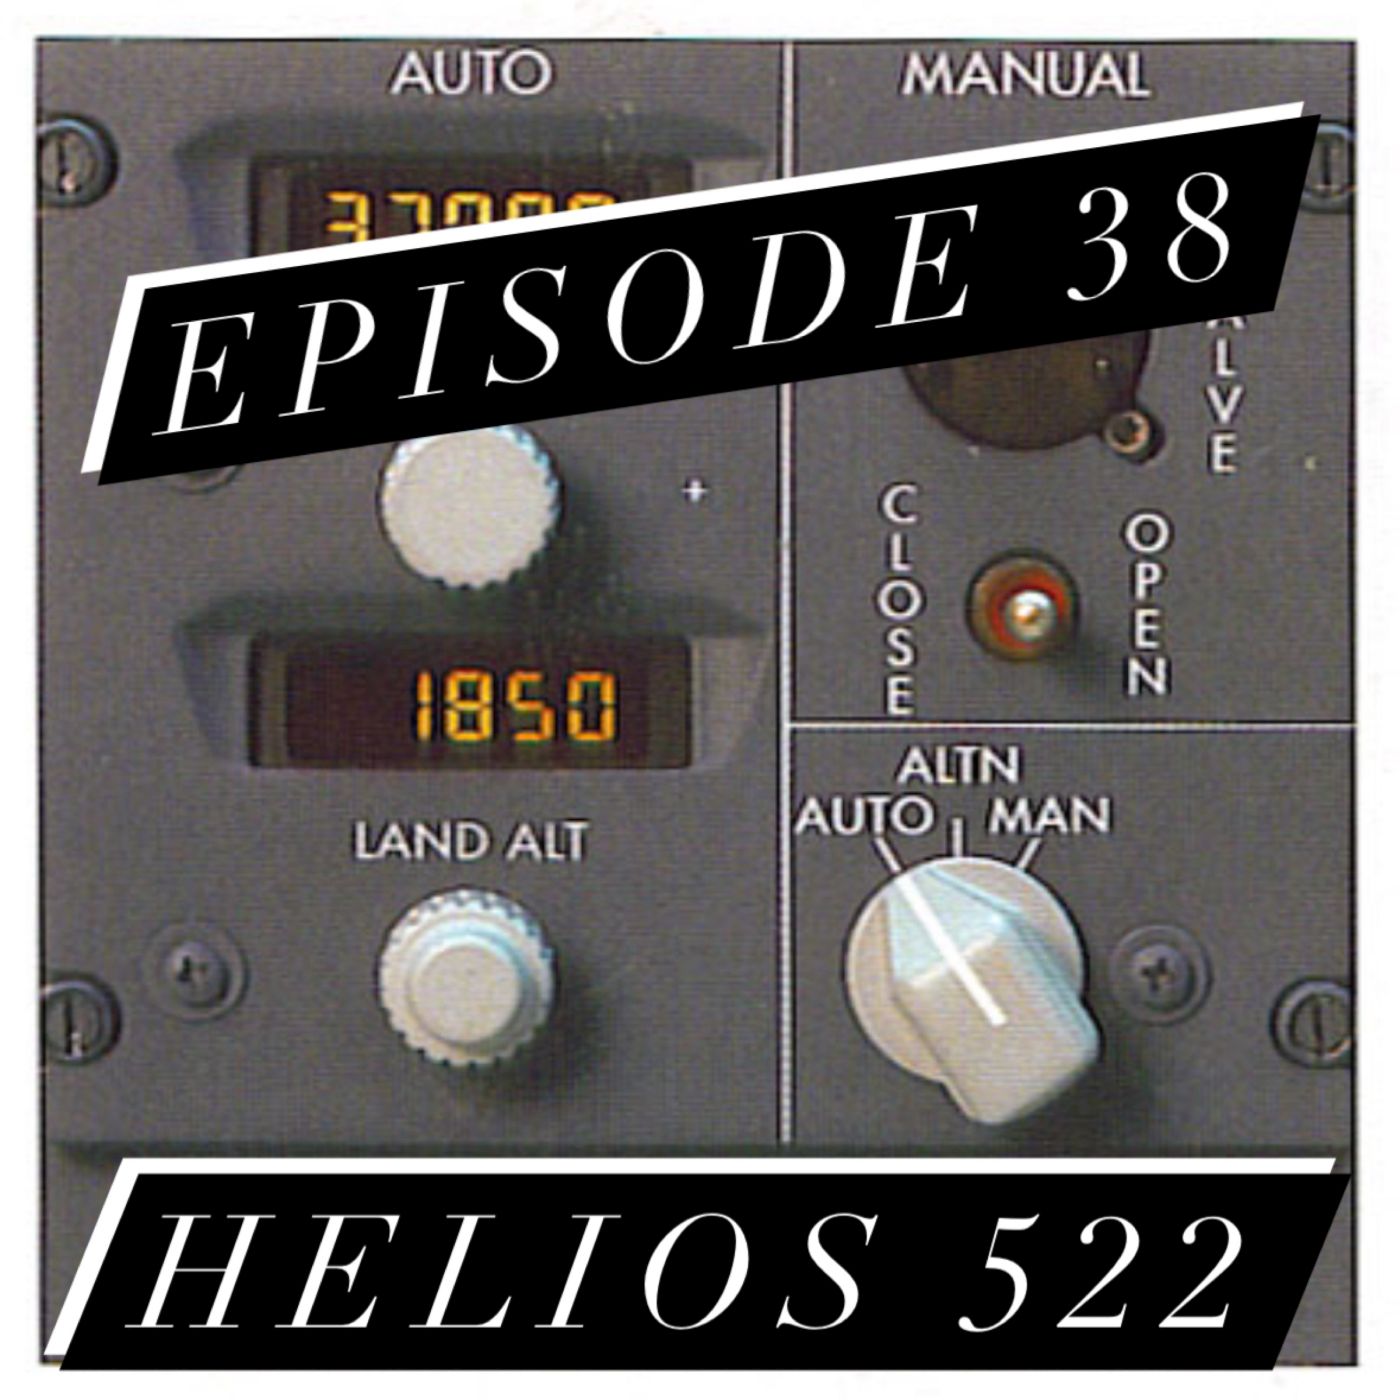 38. Captain Hypoxia - Part 2 - Helios 522